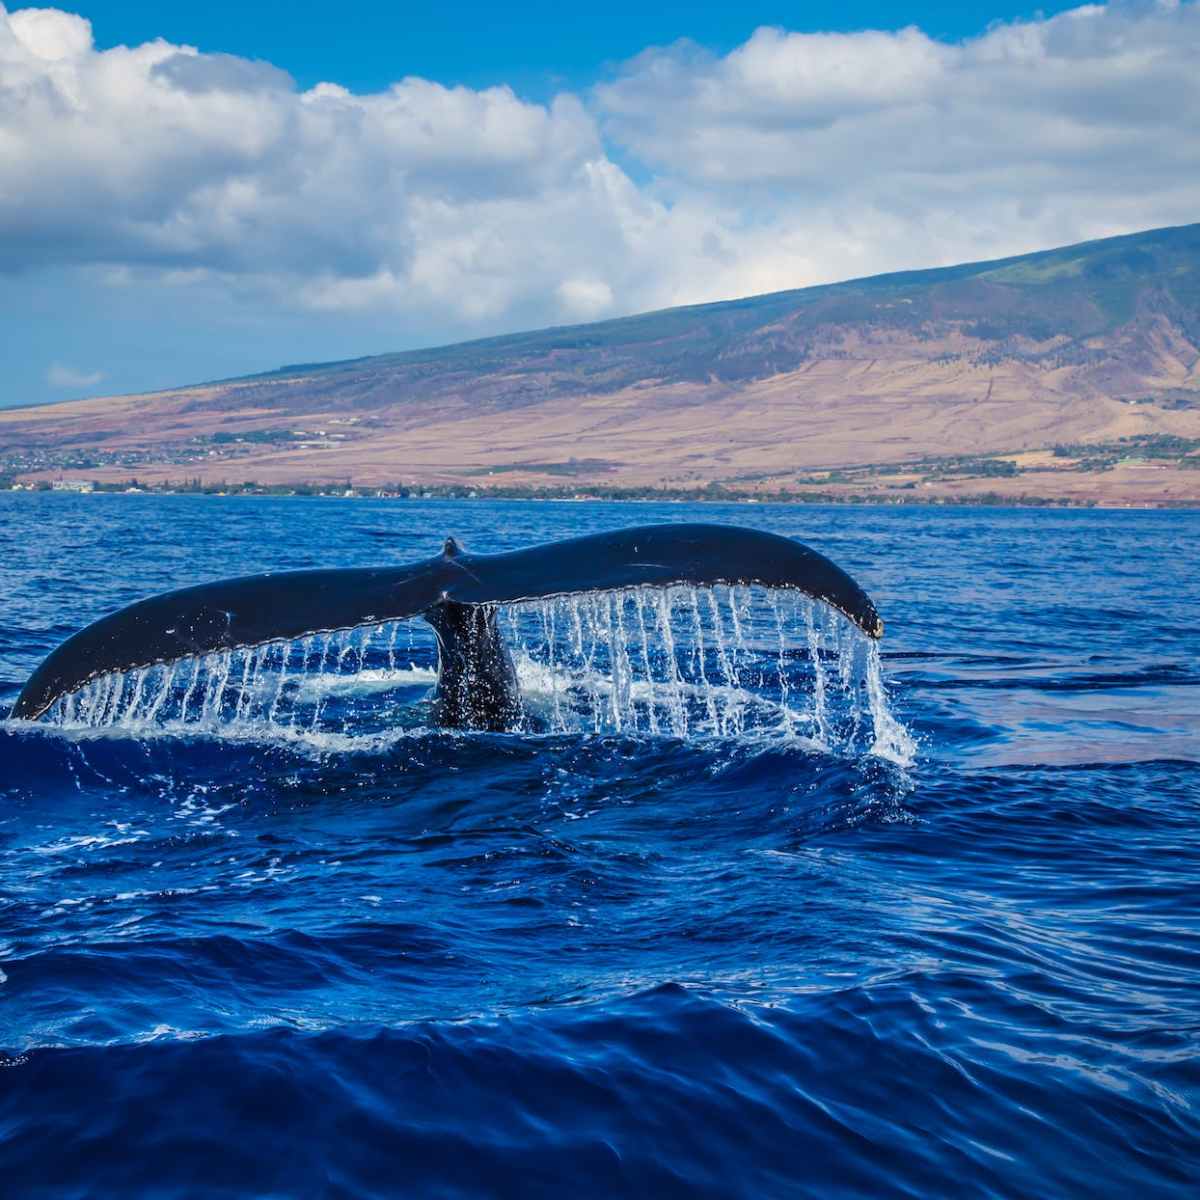 Whale Season on Maui